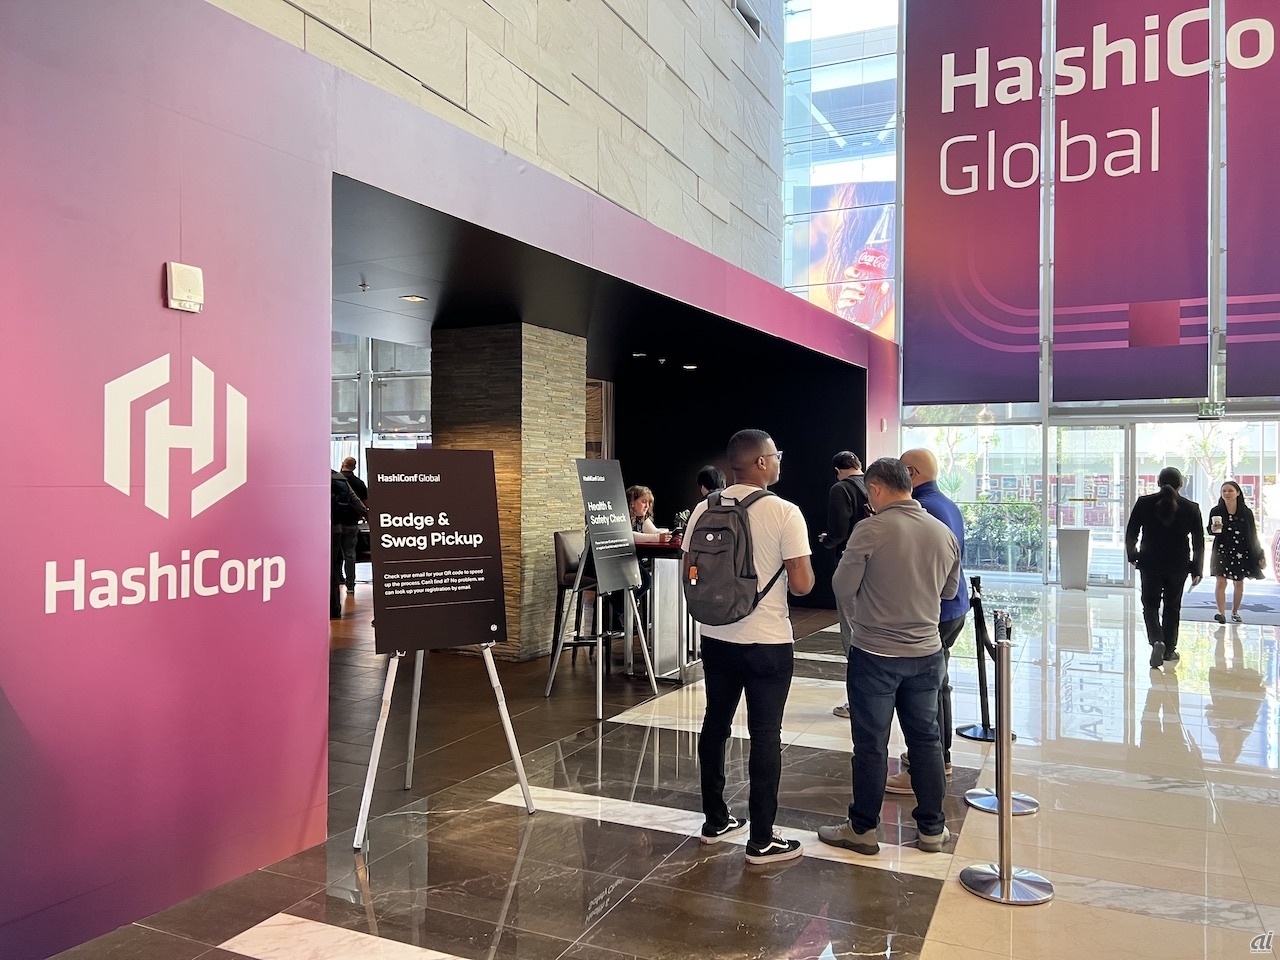 　クラウドインフラ管理などのオープンソースソフトウェア（OSS）群を開発するHashiCorpは米国時間10月5〜6日、同社カンファレンス「HashiConf Global 2022」をロサンゼルスで開催した。ここでは、会場の様子を写真で紹介する。

　会場となったJW Marriott at L.A. LIVEのロビーに設けられたレジストレーションエリア。ここで、パスとノベルティー類を受け取る。

（取材協力：HashiCorp）